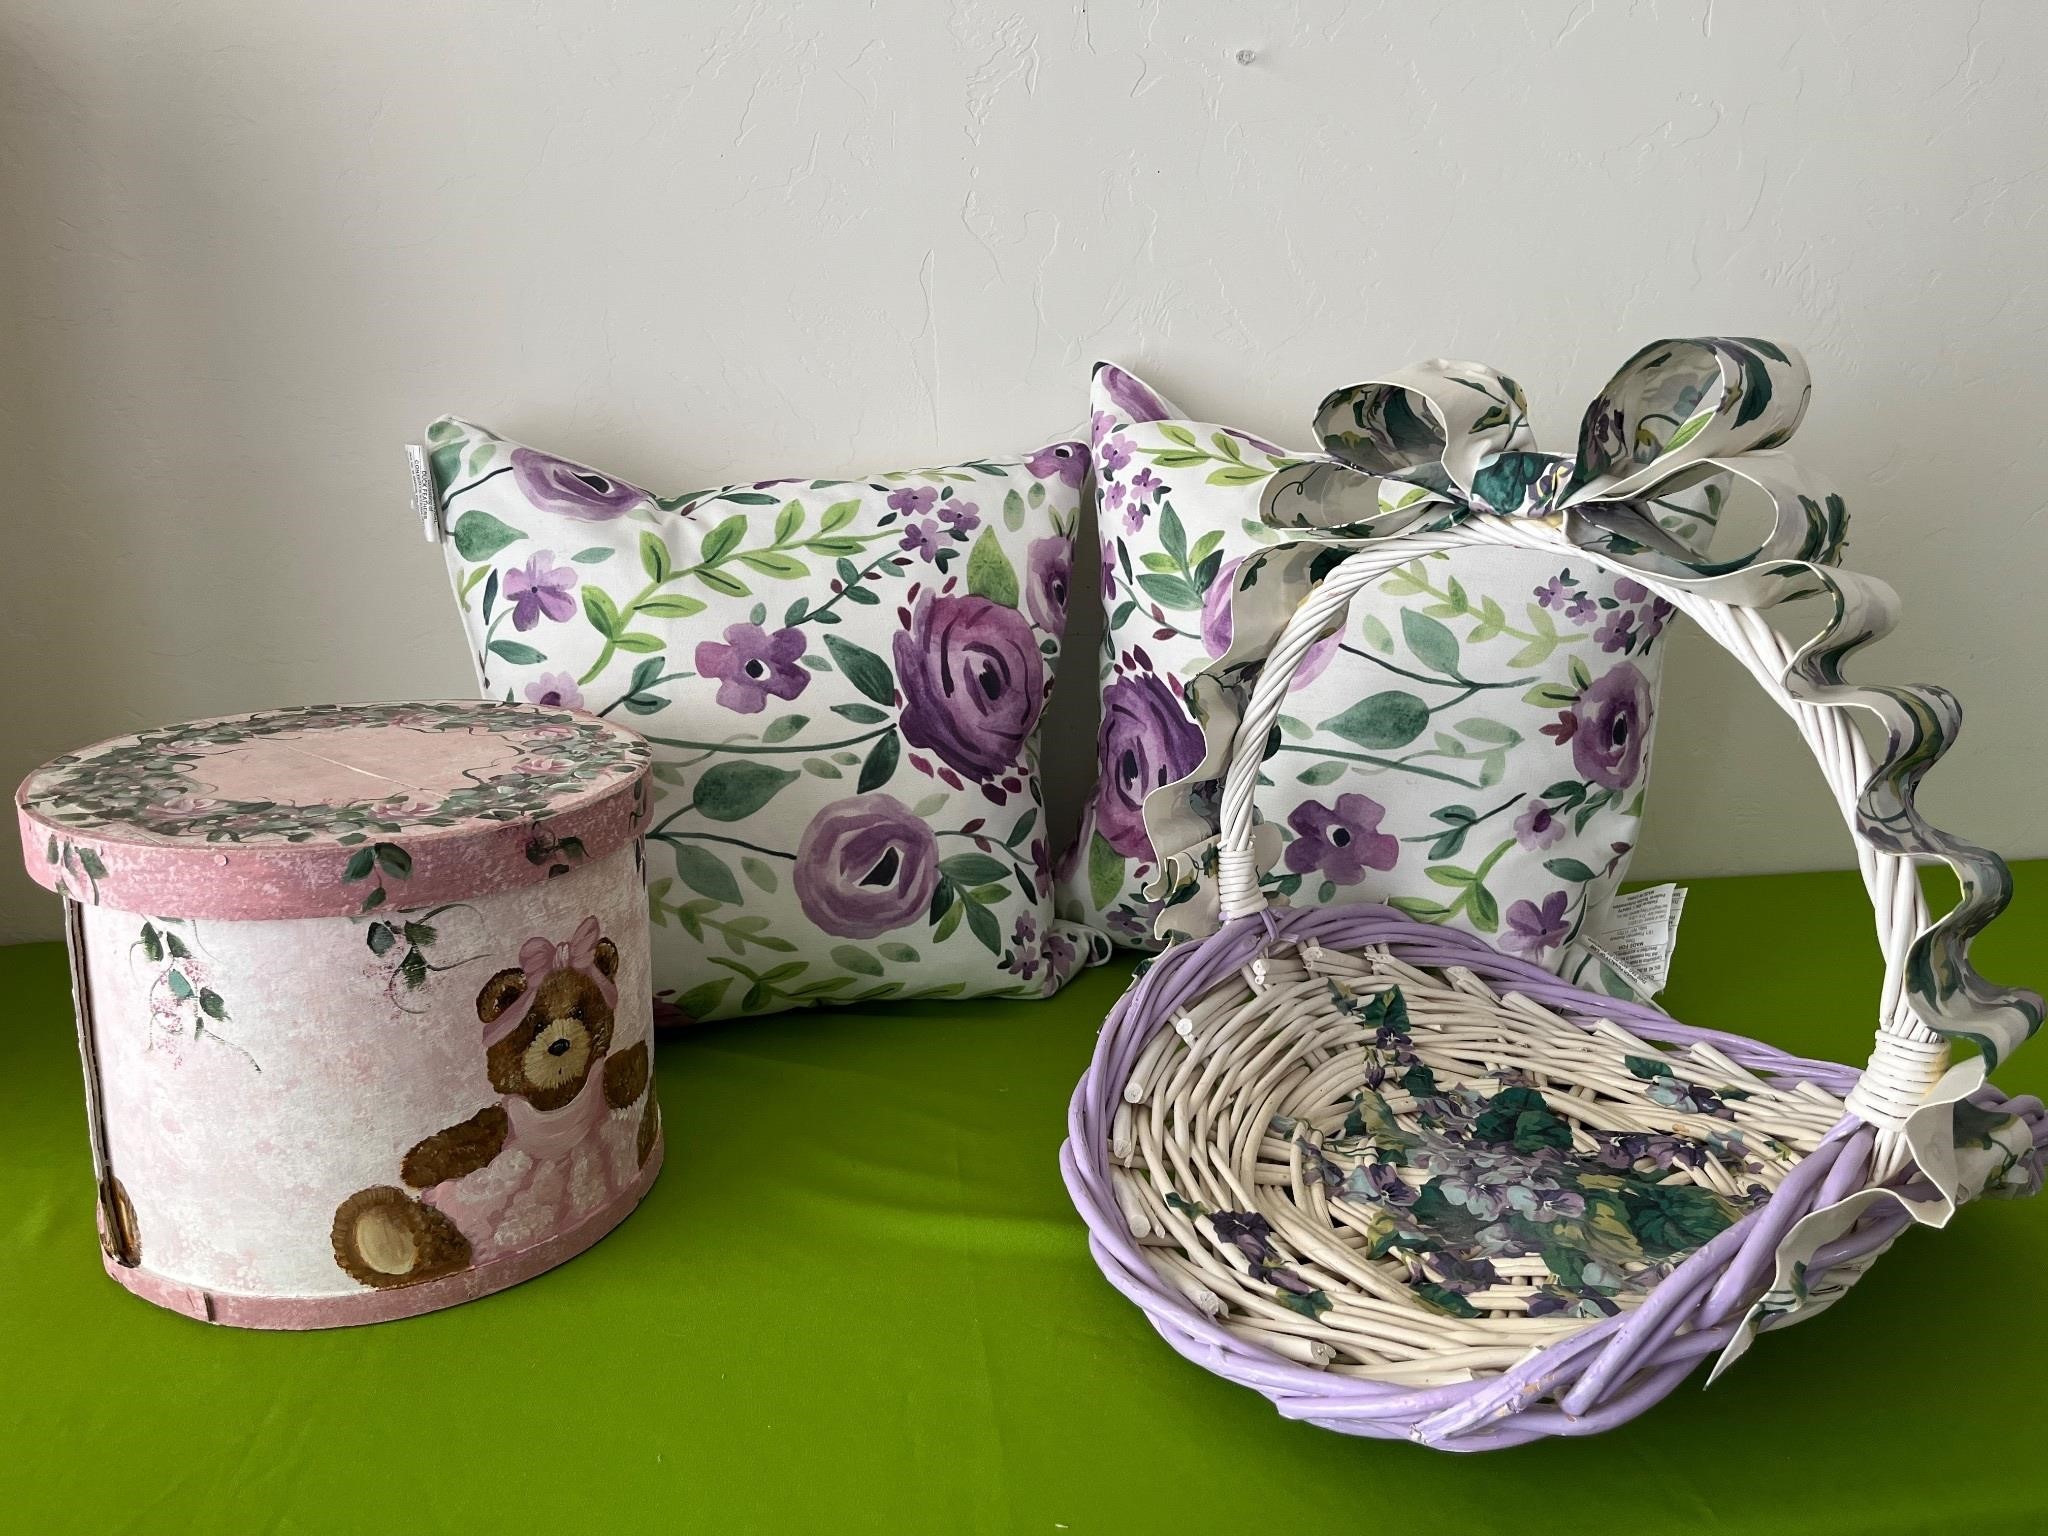 Purple & White Floral Throw Pillows, Basket +++